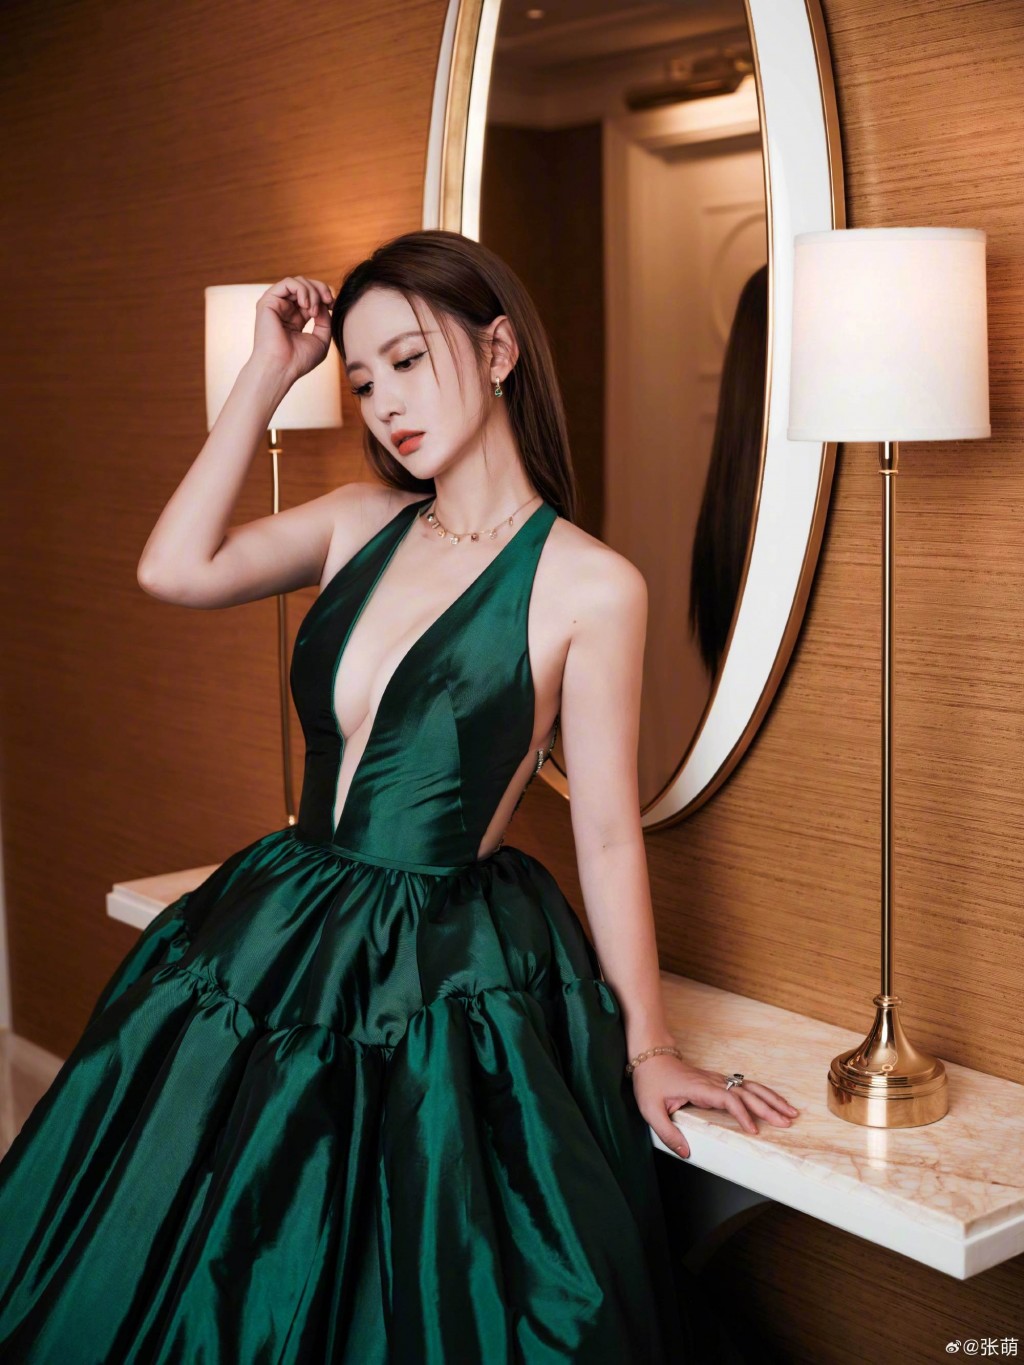 张萌绿色礼裙丰满迷人写真图片